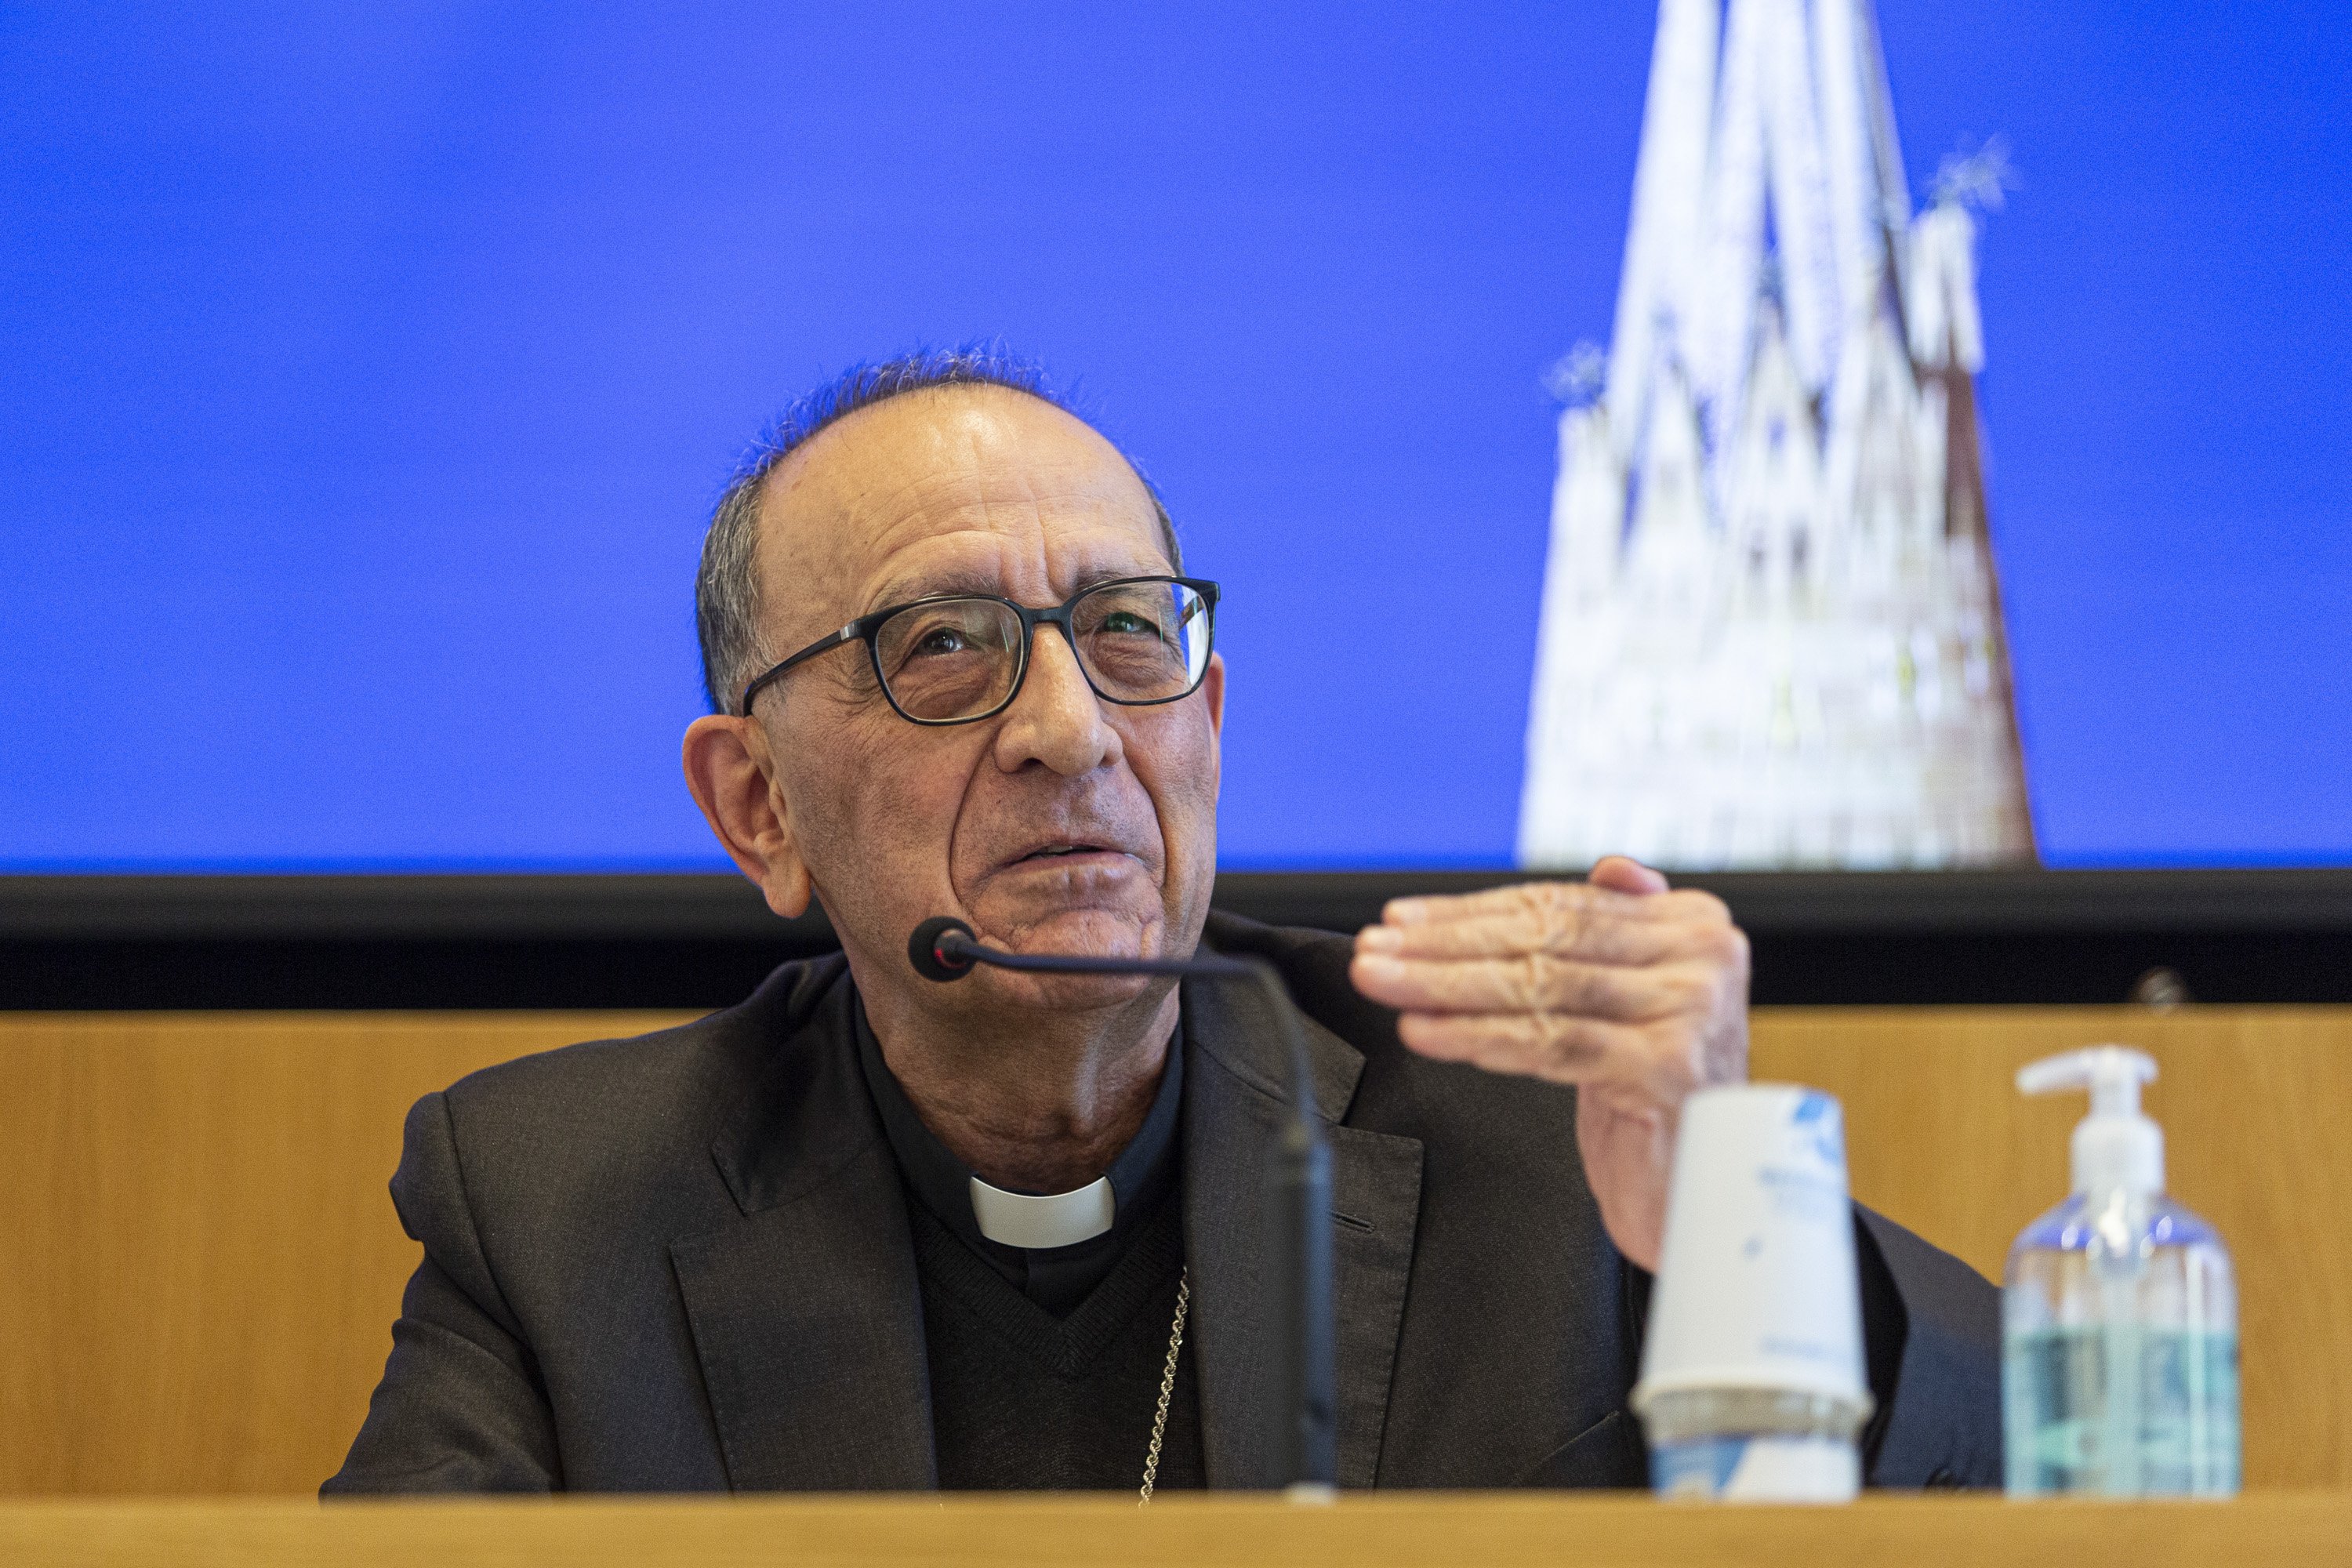 Omella reconeix que els bisbes "contribuïm a la desafecció en l'Església"